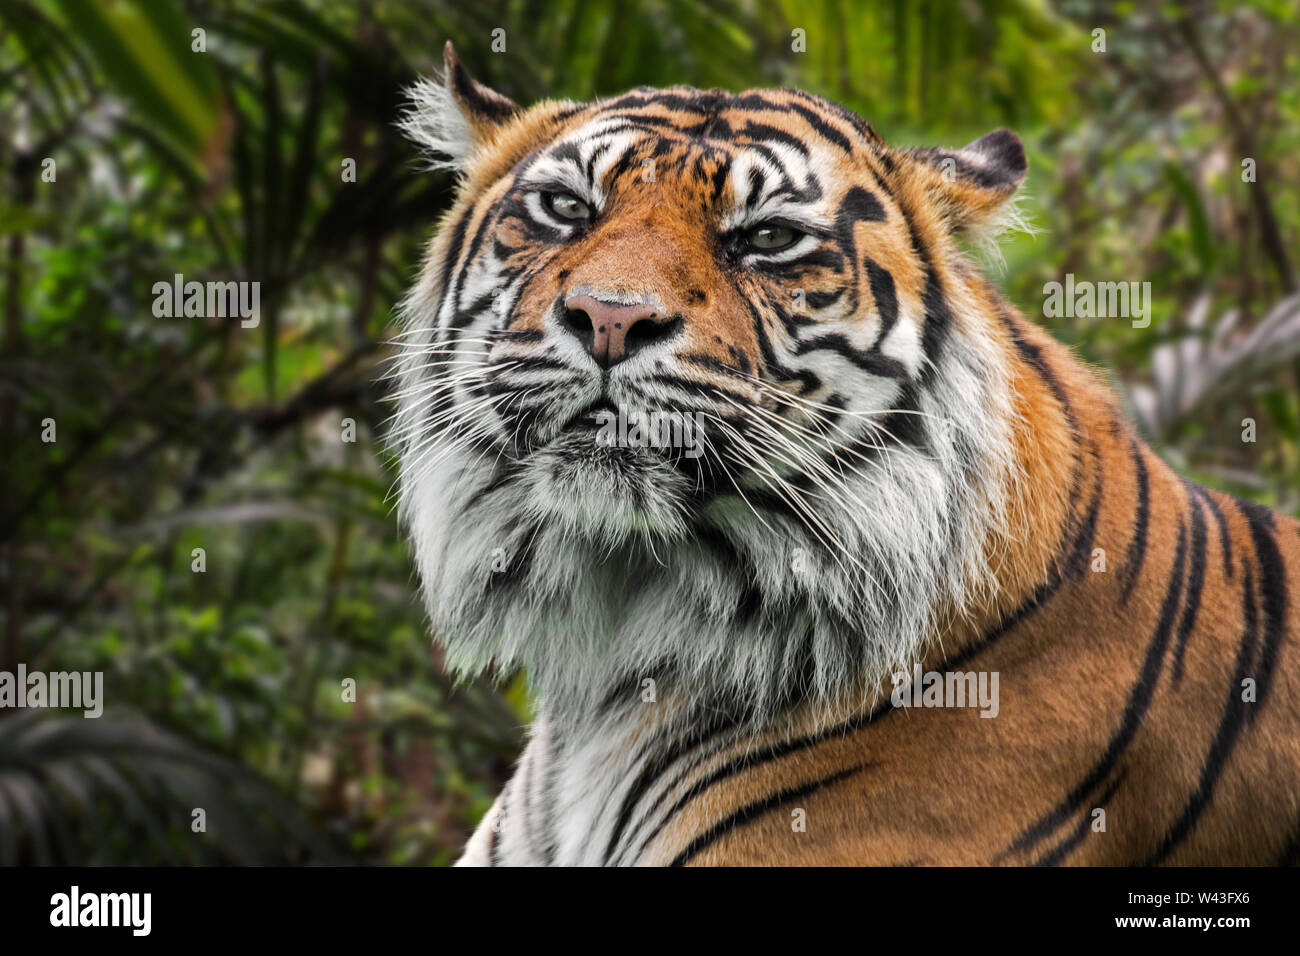 Tigre de Sumatra (Panthera tigris sondaica) en forêt tropicale, originaire de l'île indonésienne de Sumatra, Indonésie Banque D'Images